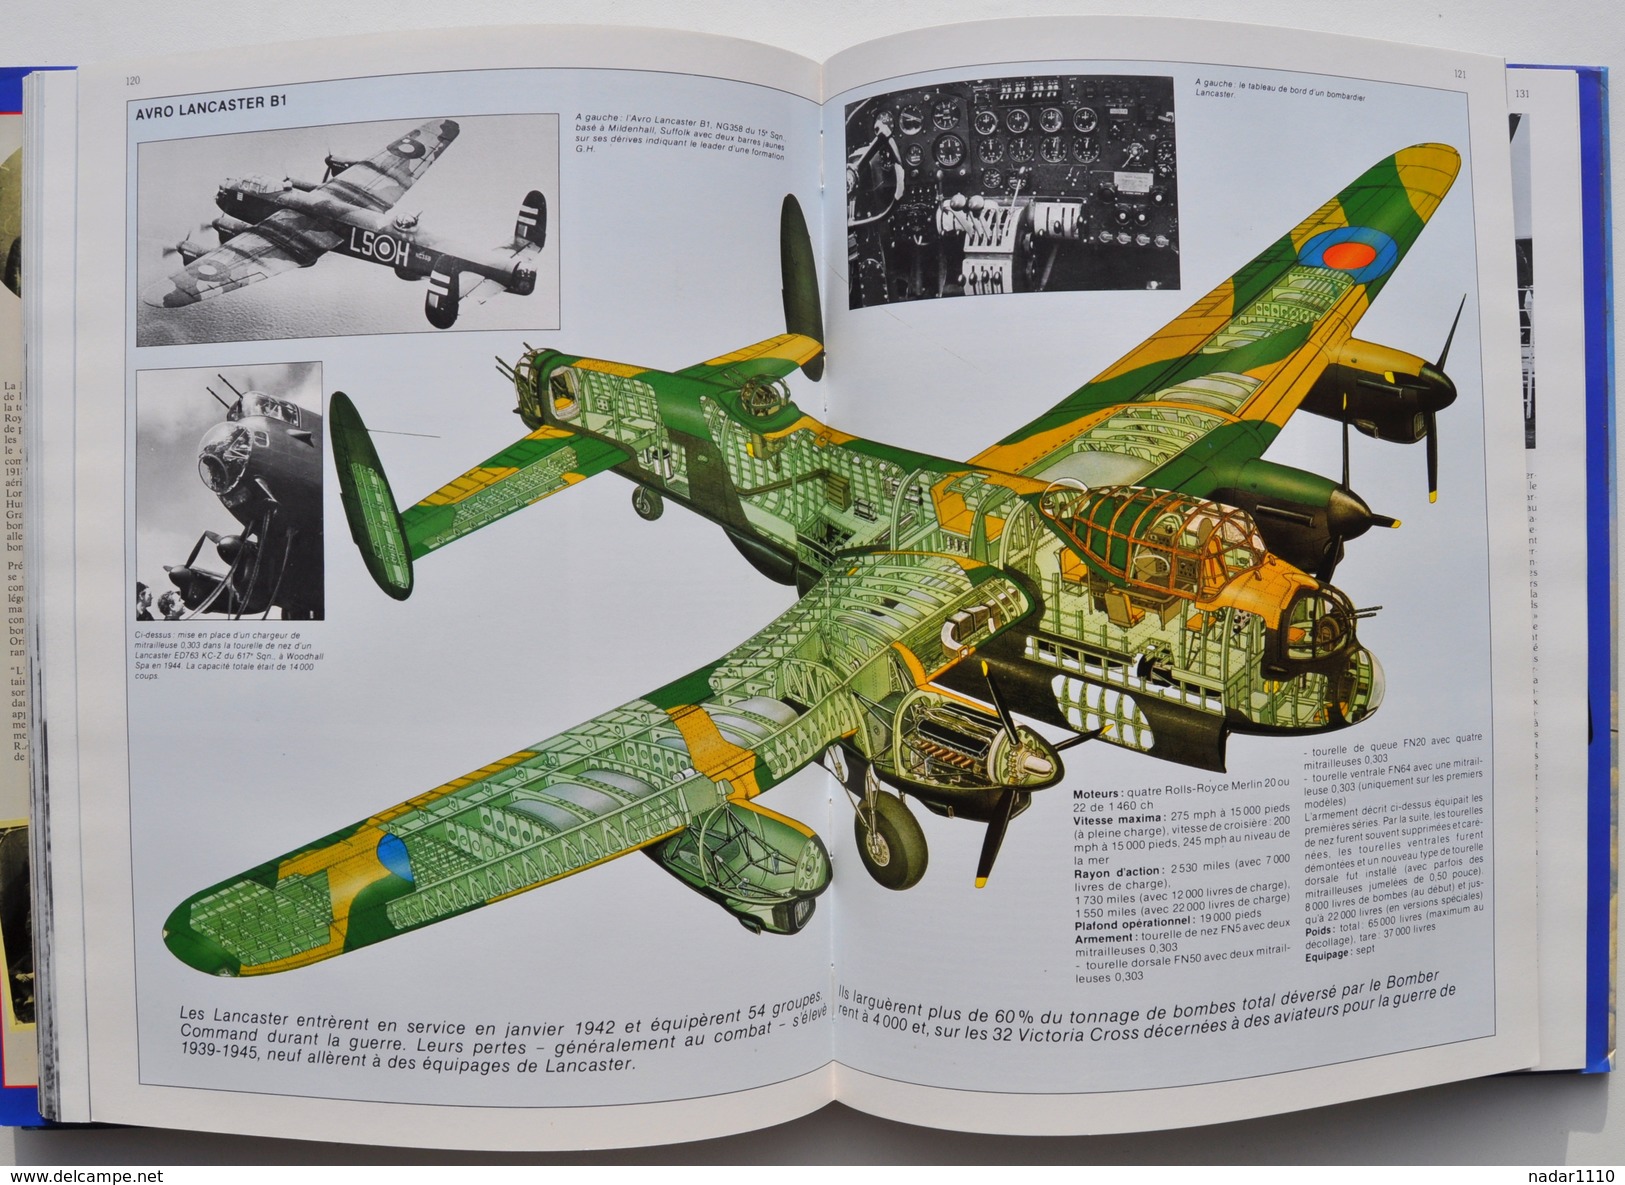 Avion, aviation, Guerre 40-45 / HISTOIRE DE LA R.A.F. - Chaz Bowyer, 1989 / Royal Air Force, Lancaster